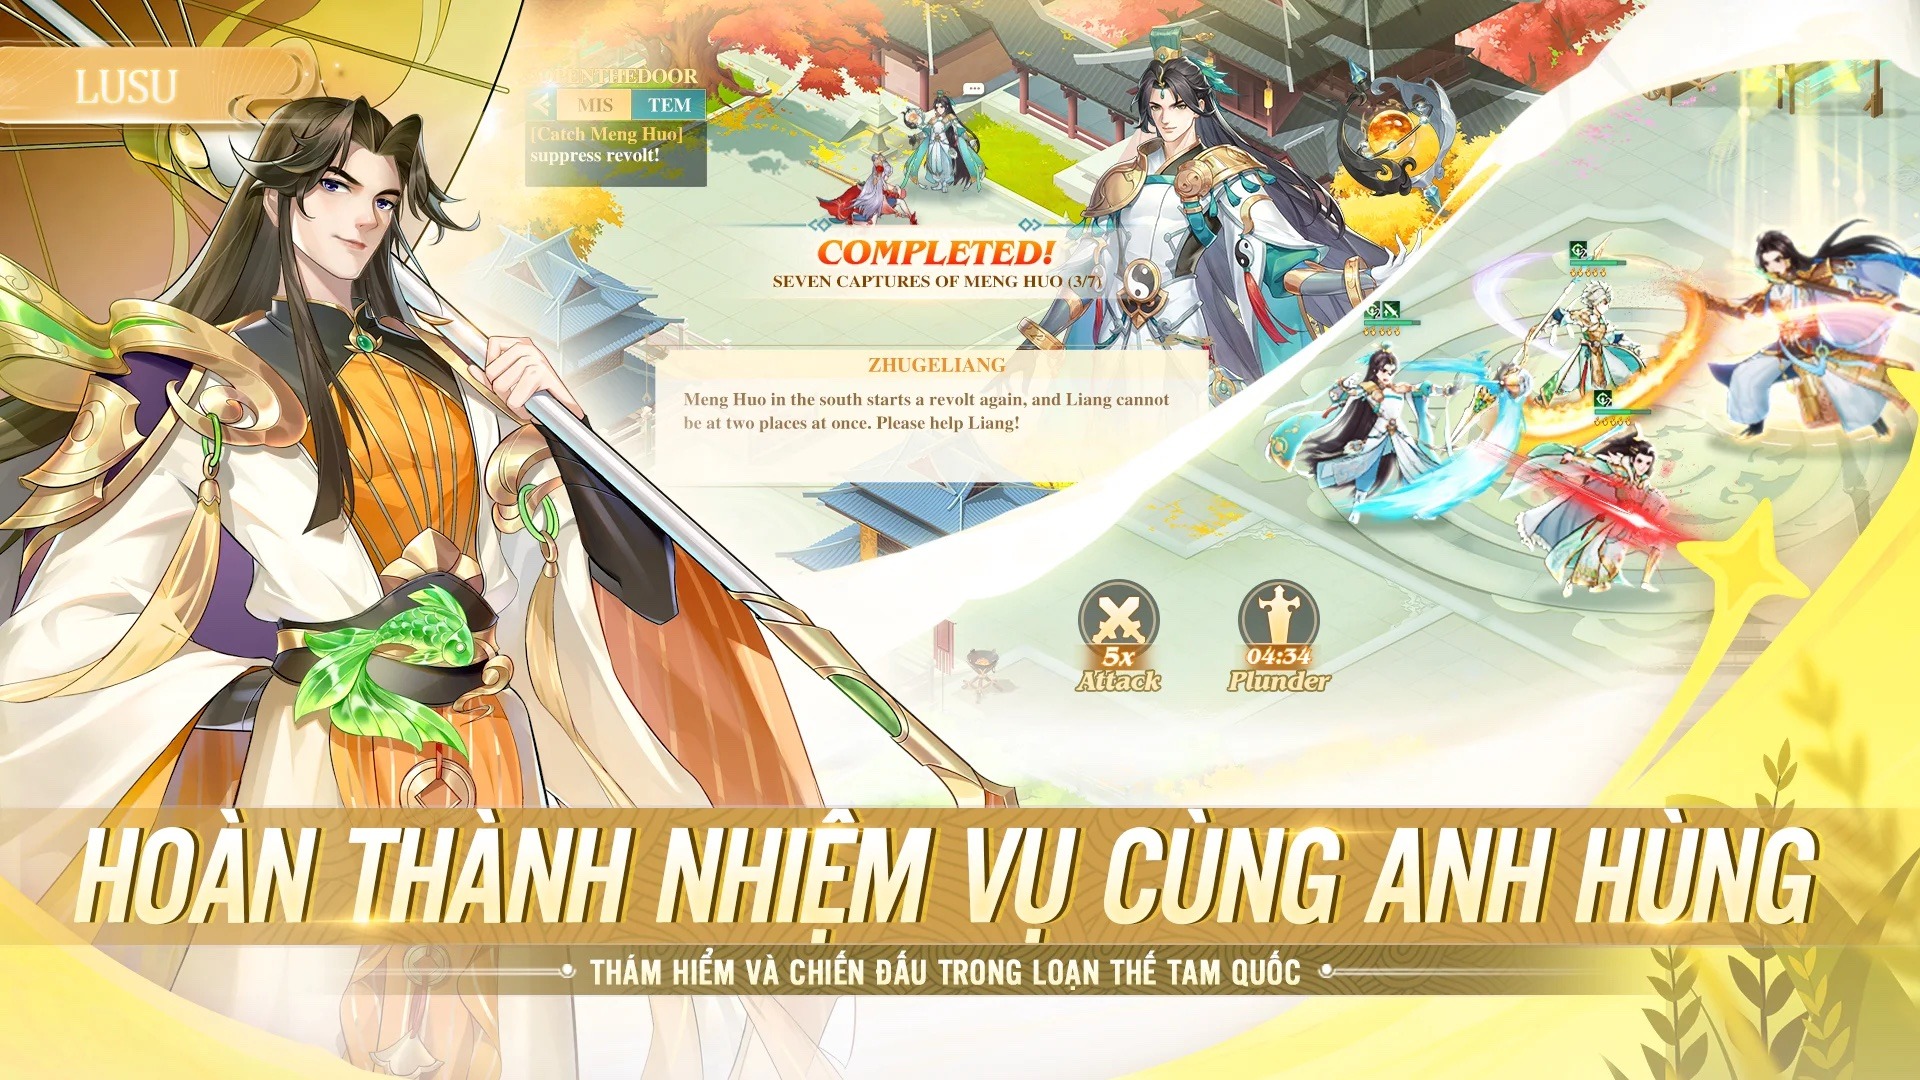 Tân 3Q Truyền Kỳ: Thêm một game mới đề tài nhập vai đấu tướng Tam Quốc